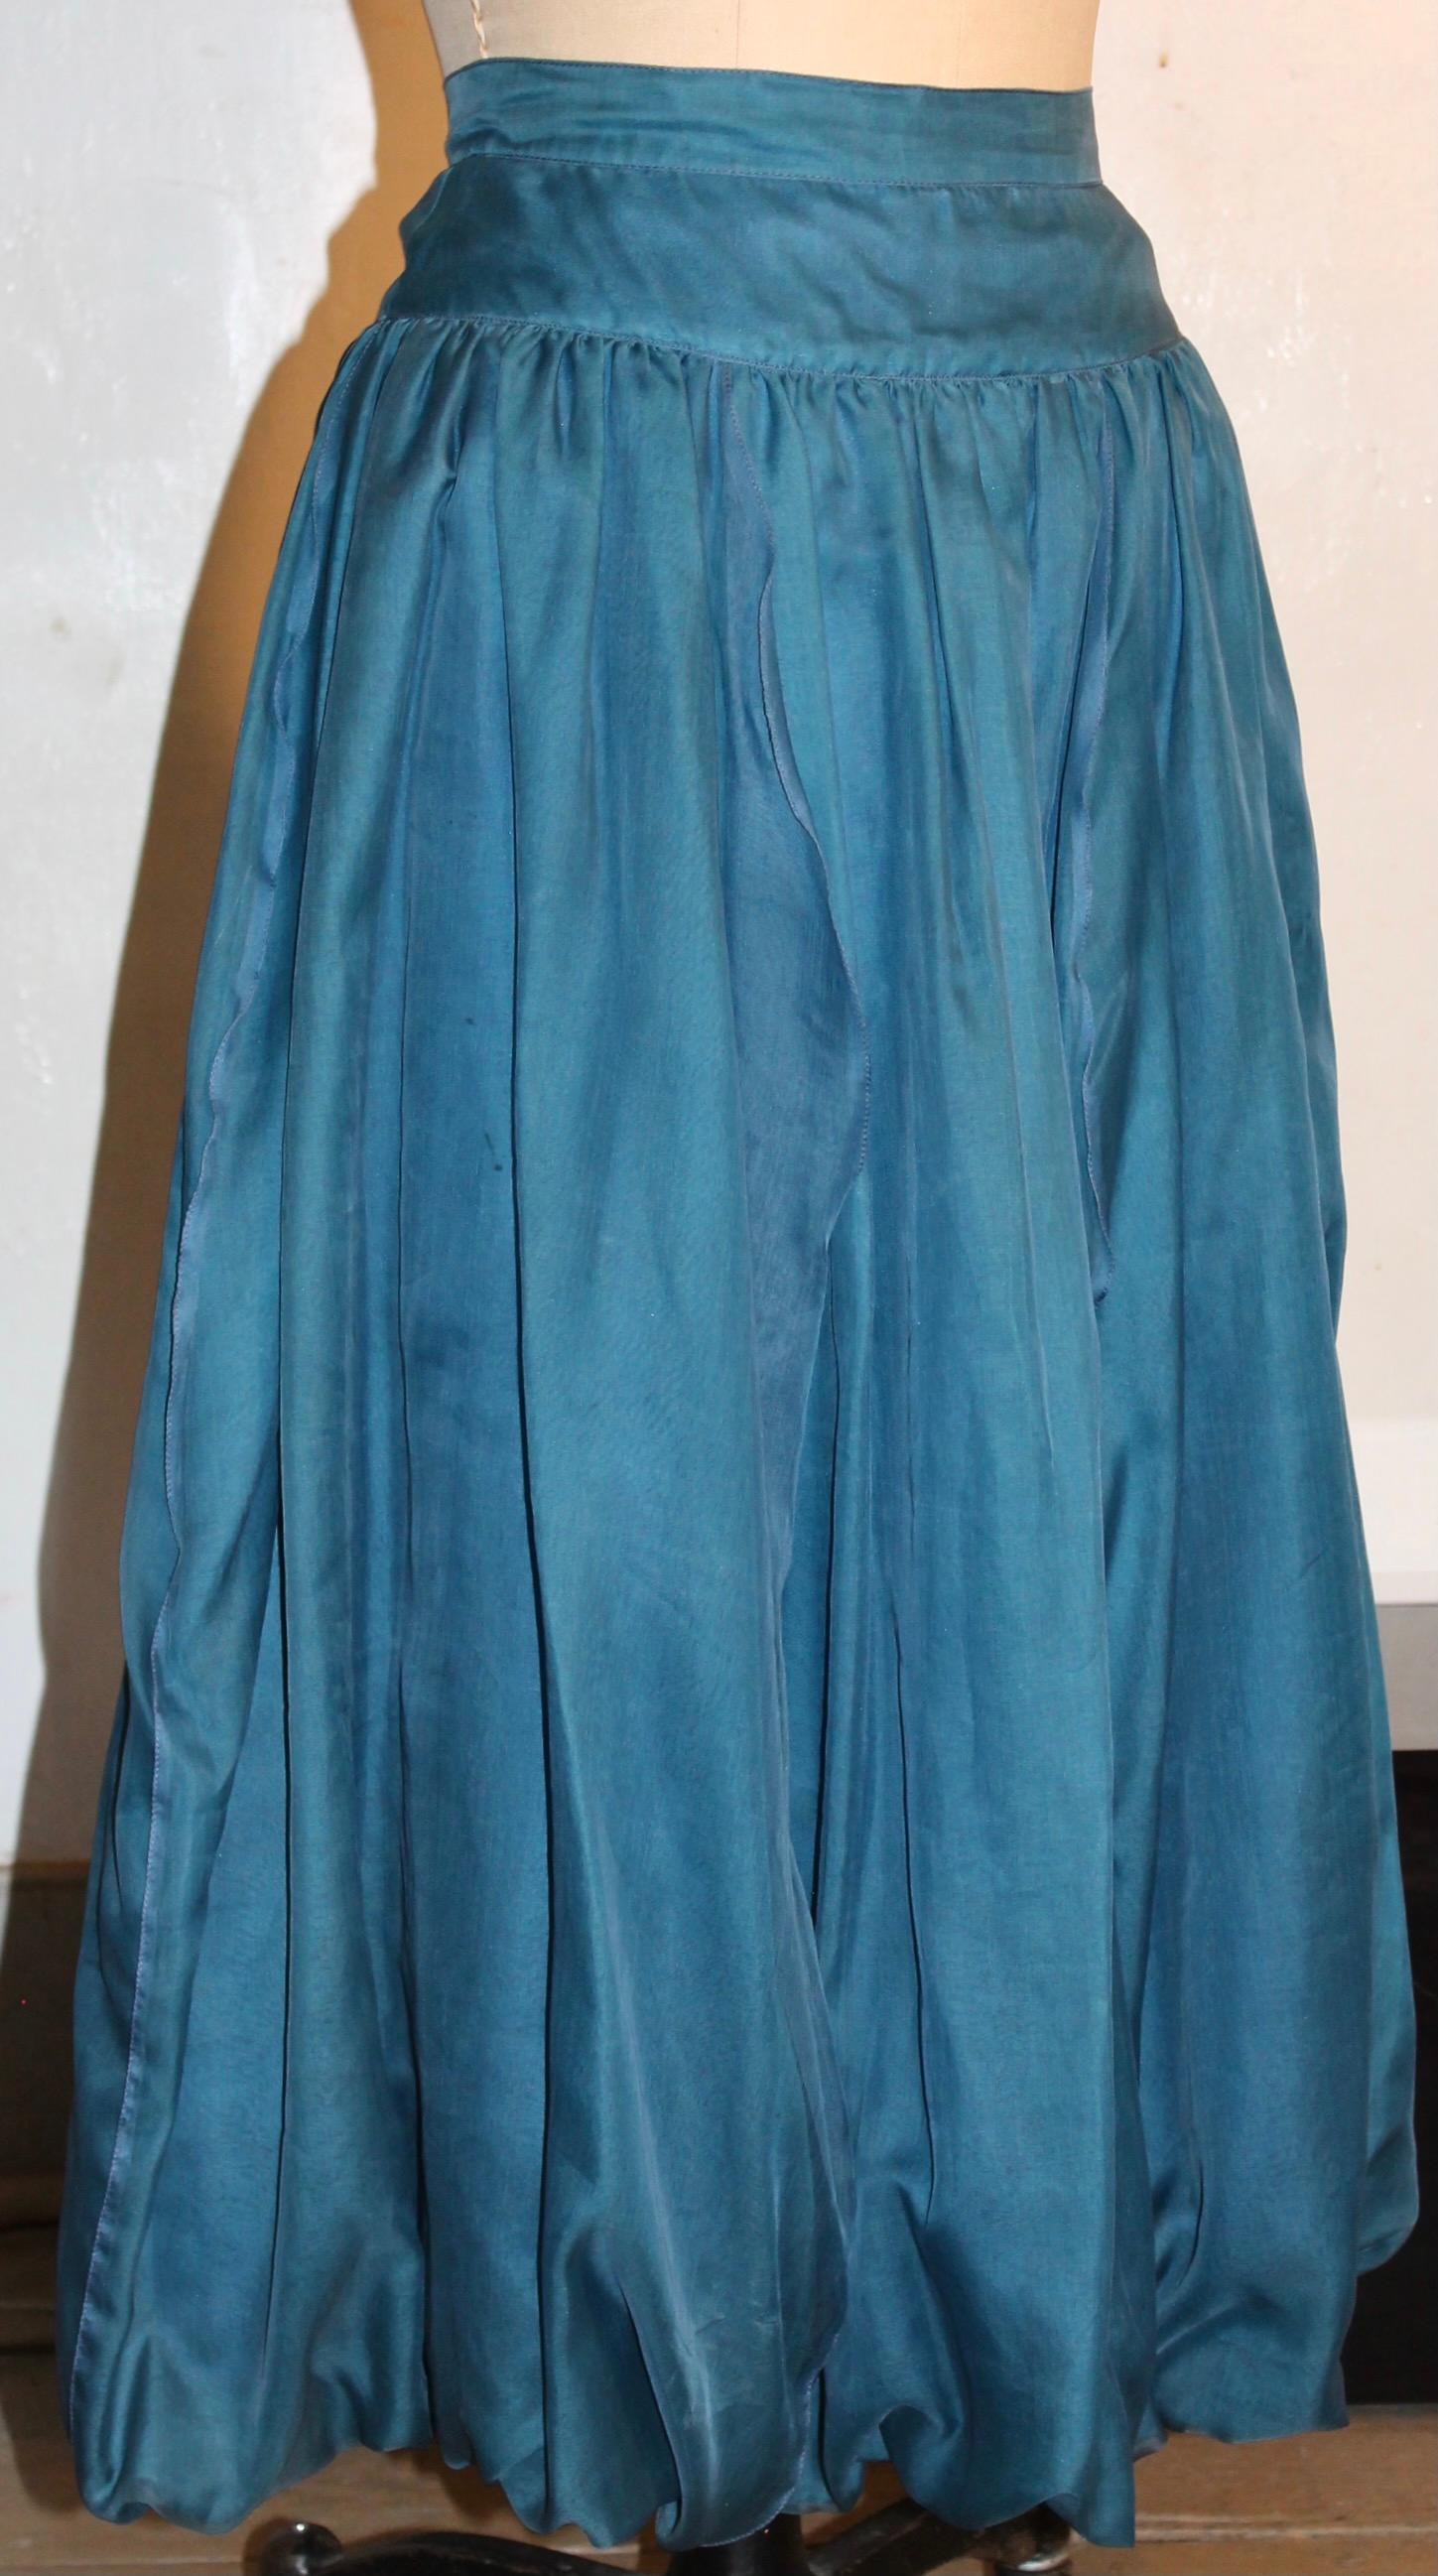 La jupe est entièrement doublée de soie bleue et présente un effet légèrement bouffant à l'ourlet.